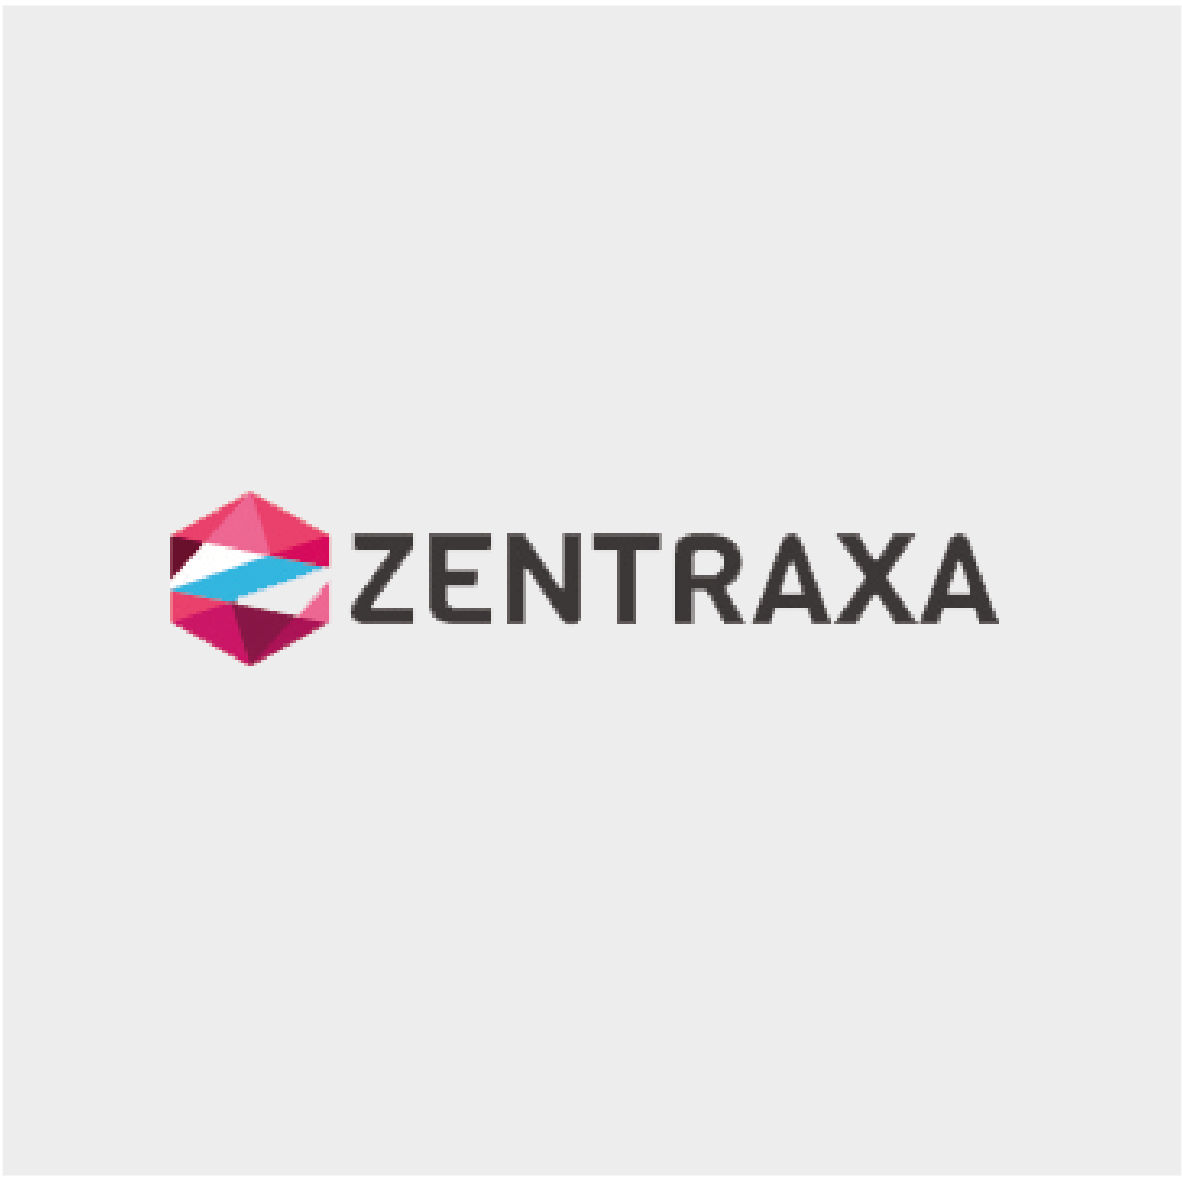 Zentraxa Seed